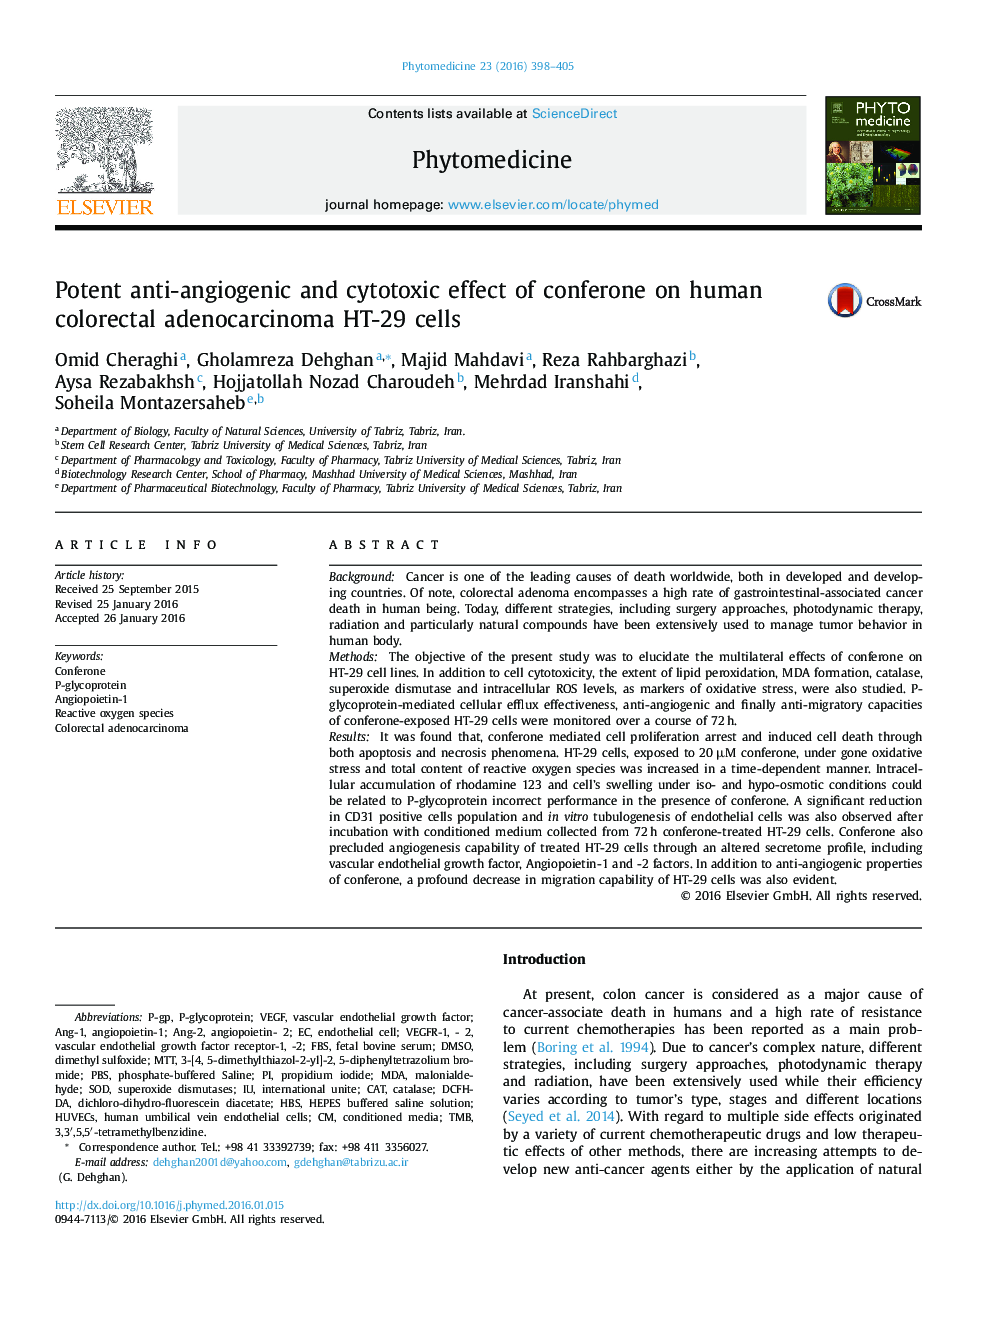 اثر آنتی رگ زایی و سیتوتوکسی قوی کانفرون بر سلولهای HT-29 آدنوکارسینوم روده بزرگ انسانی